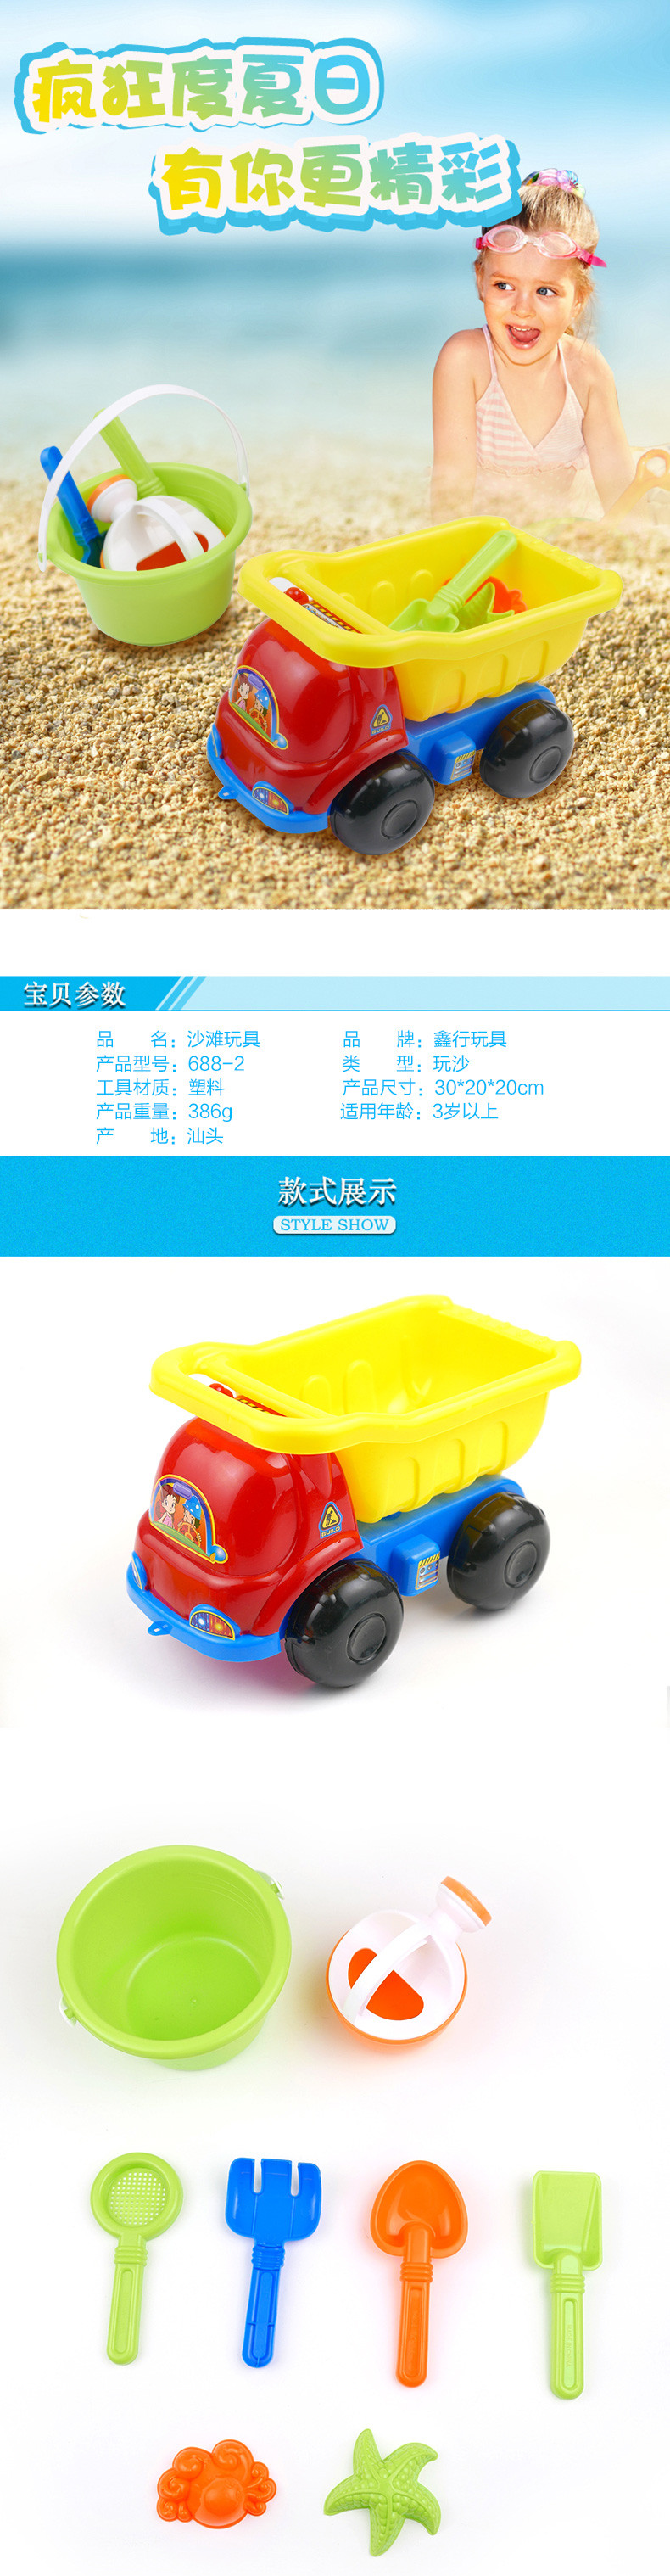 【邮乐新乡馆】鑫行玩具沙滩玩具688-2儿童玩沙玩具